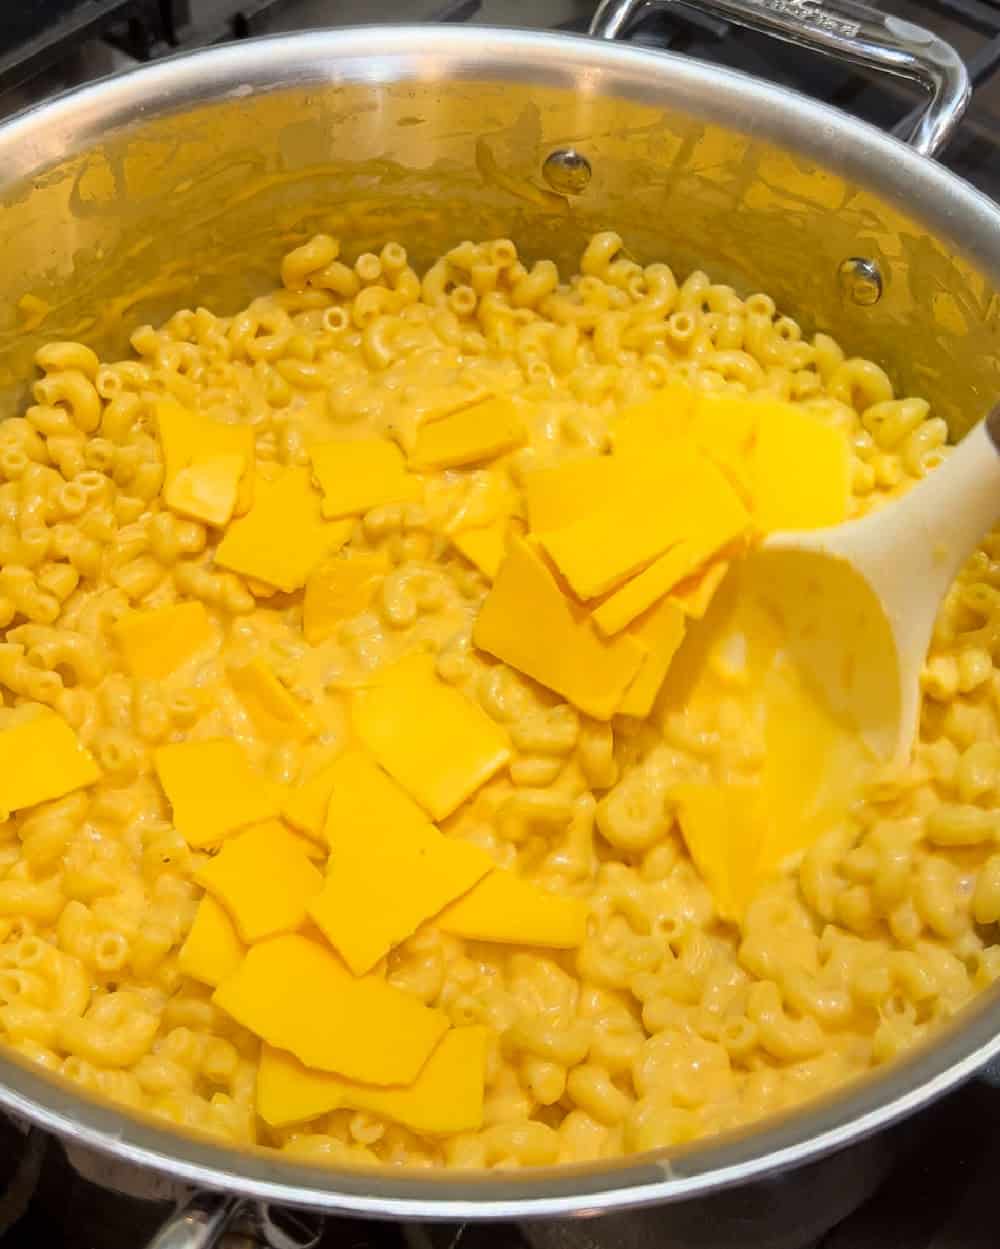 stir cheese into pasta.